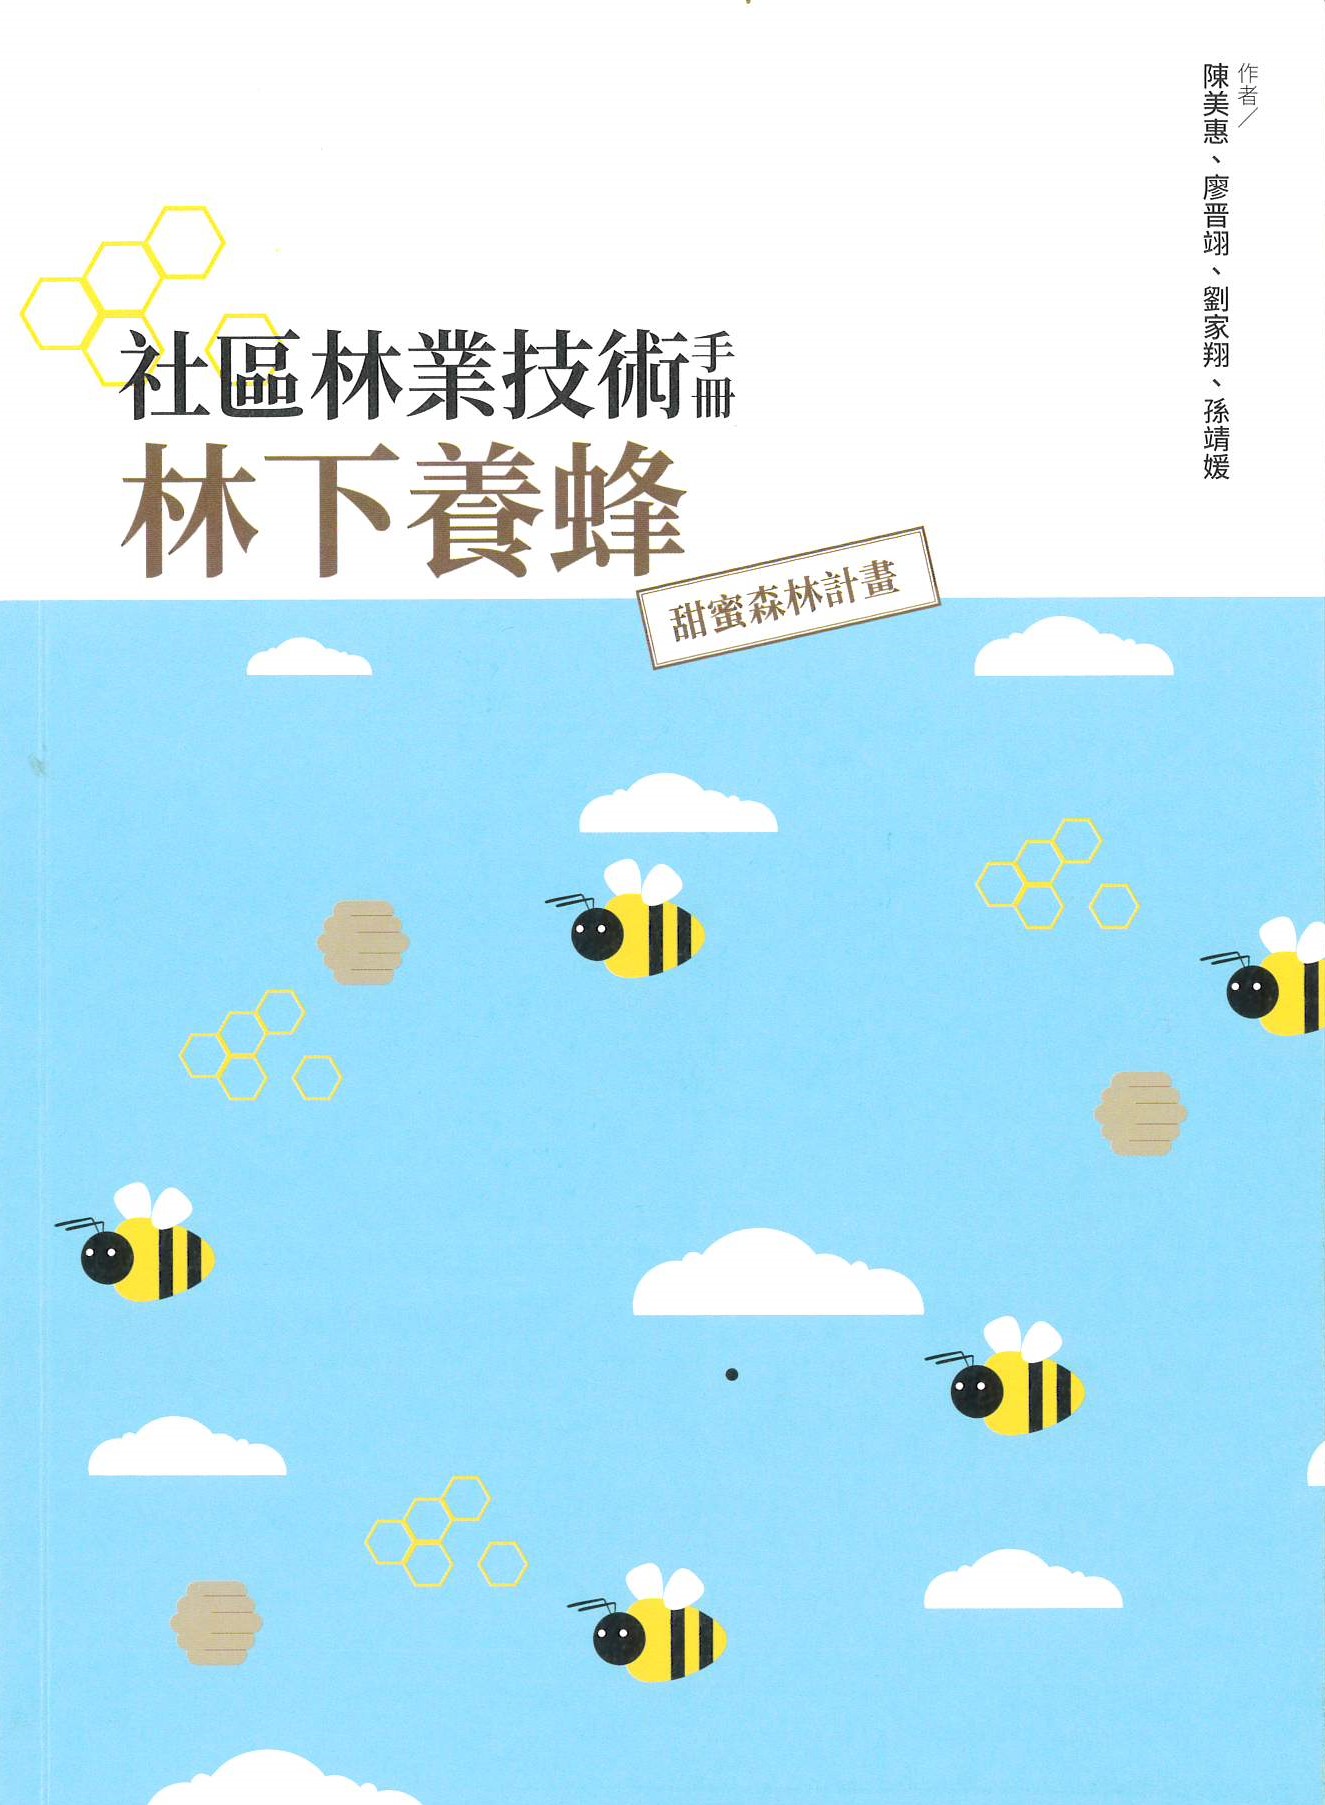 社區林業技術手冊:林下養蜂:甜蜜森林計畫 